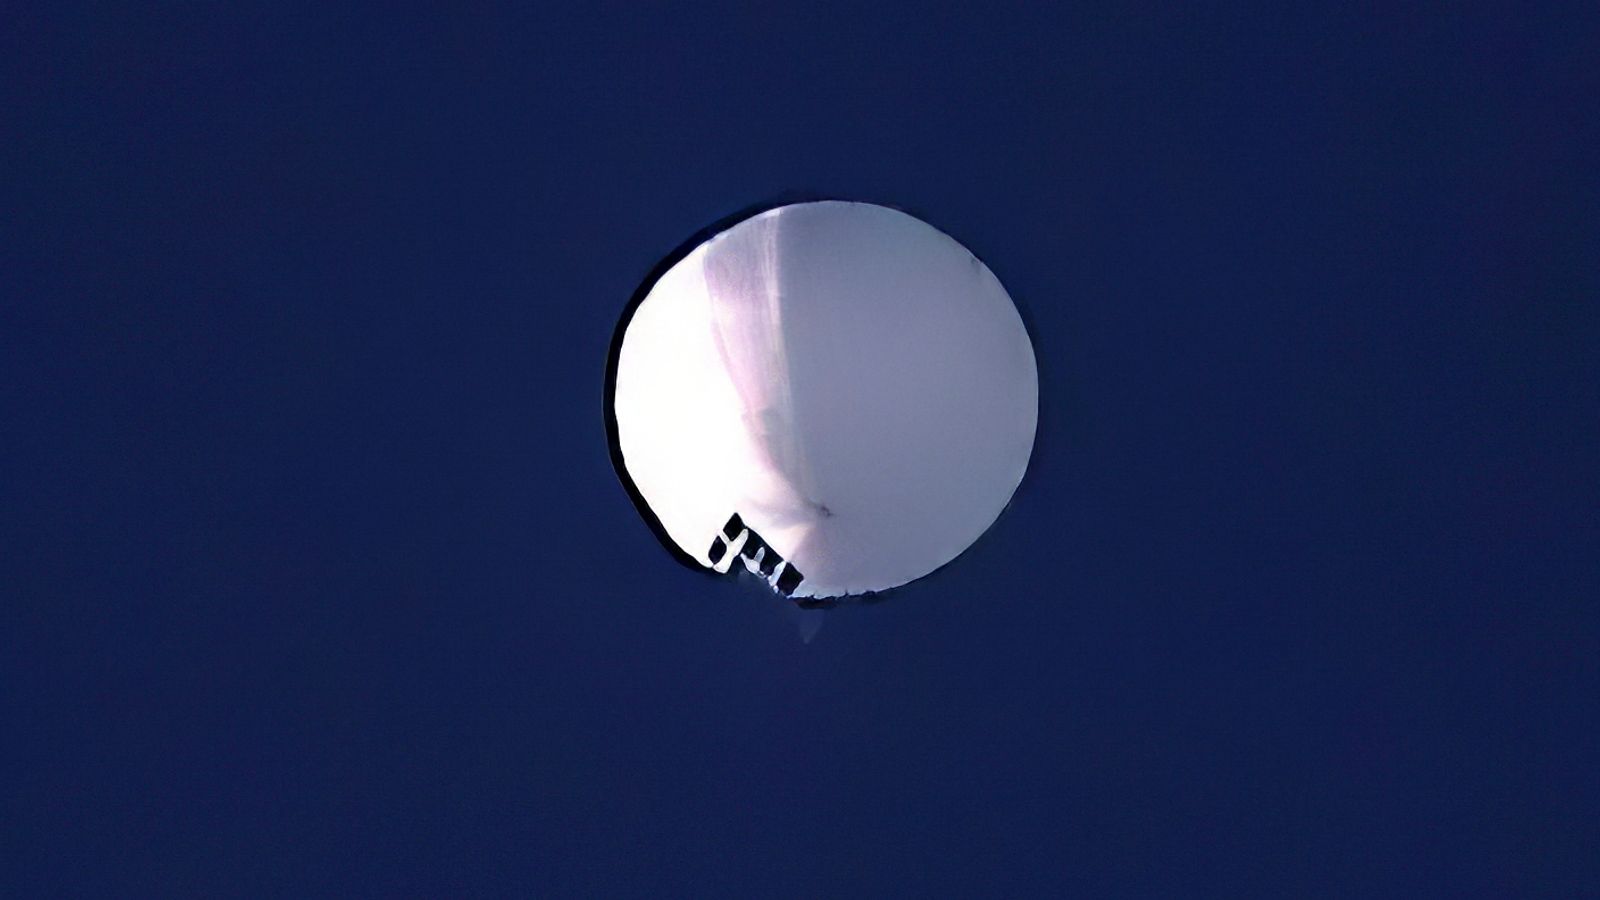 Un ballon espion chinois survole l’espace aérien américain, selon le Pentagone |  Nouvelles américaines